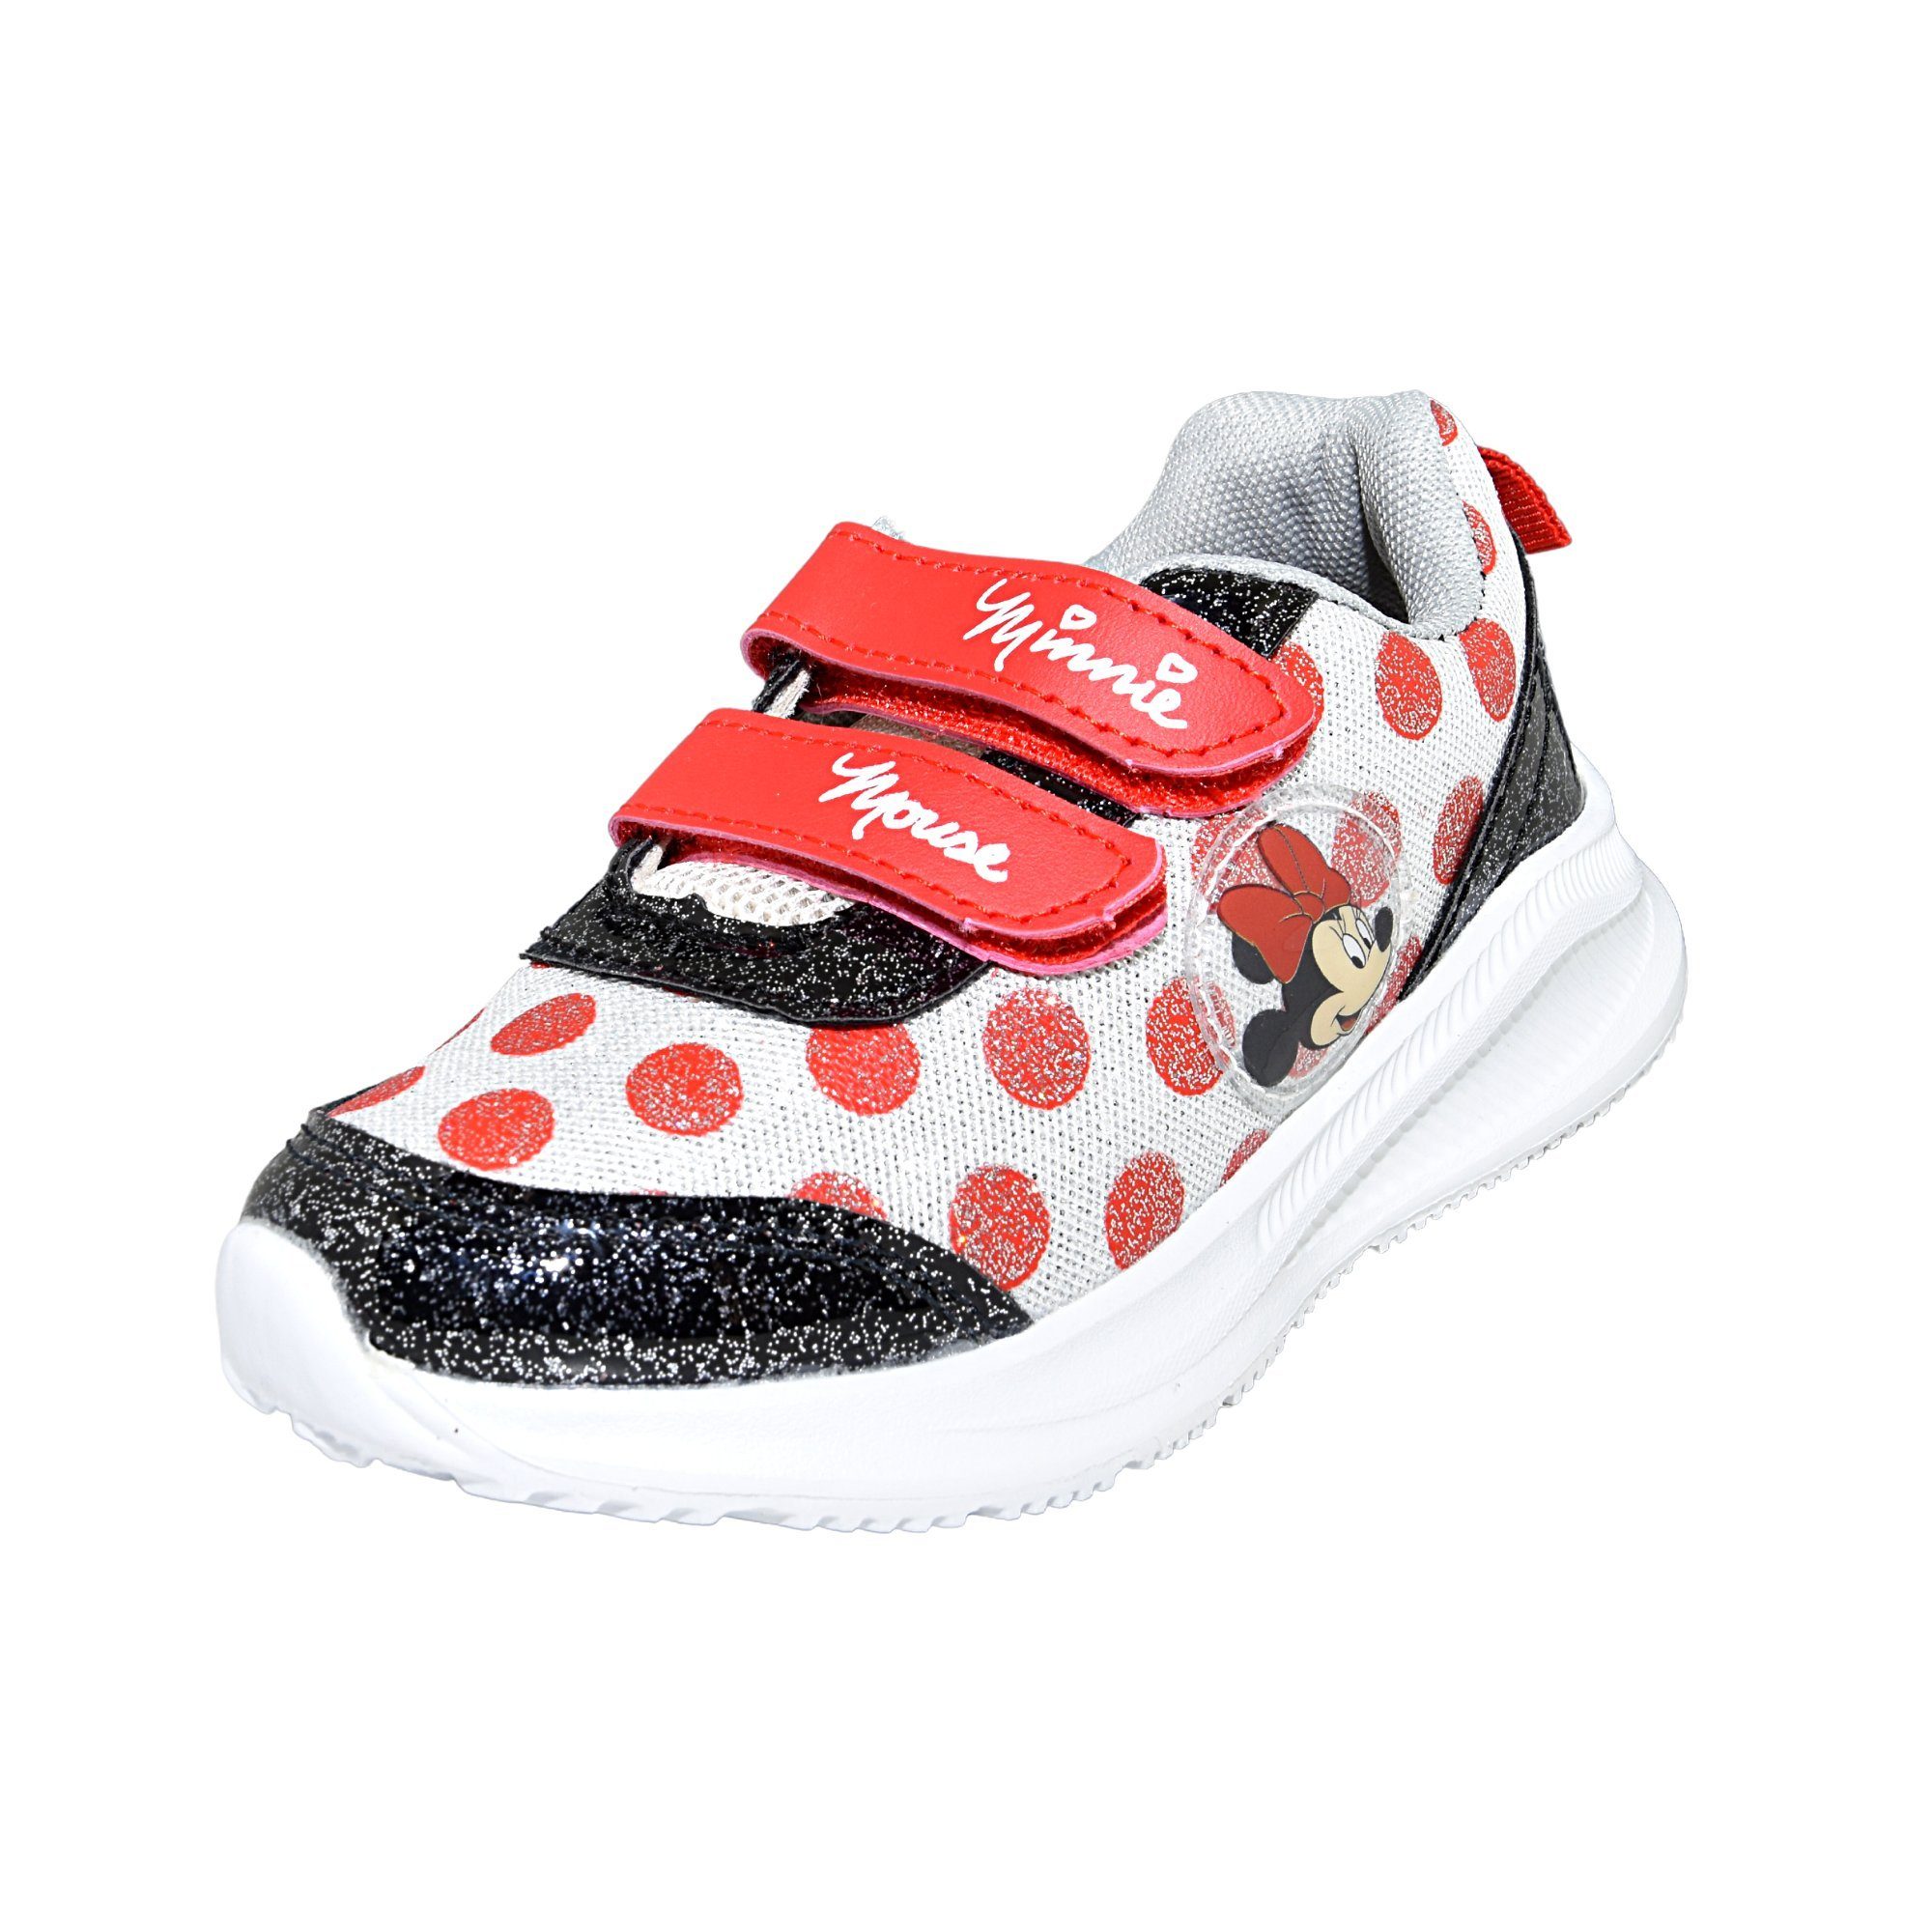 Disney Minnie Mouse Minnie Mädchen Sneaker Schuhe Gr. Maus mit glitzernde cm 23 - 28 Klettverschluss